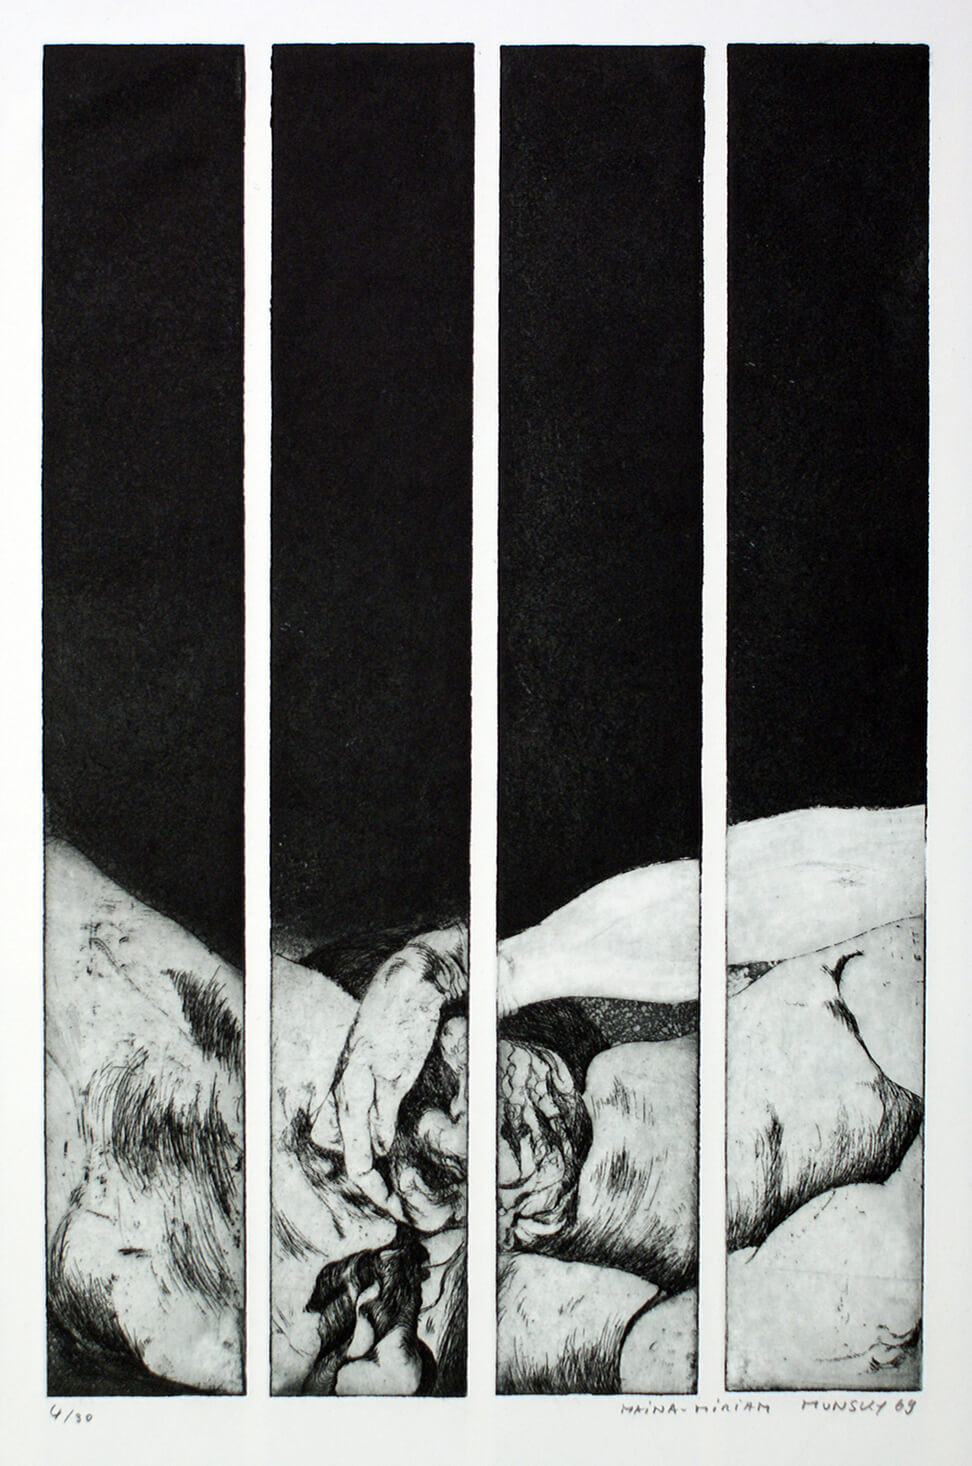 Maina-Miriam Munsky, Streifengeburt, 1969, Radierung, Auflage: 30, Bild: 39,5 x 26 cm, Blatt: 58,5 x 40 cm